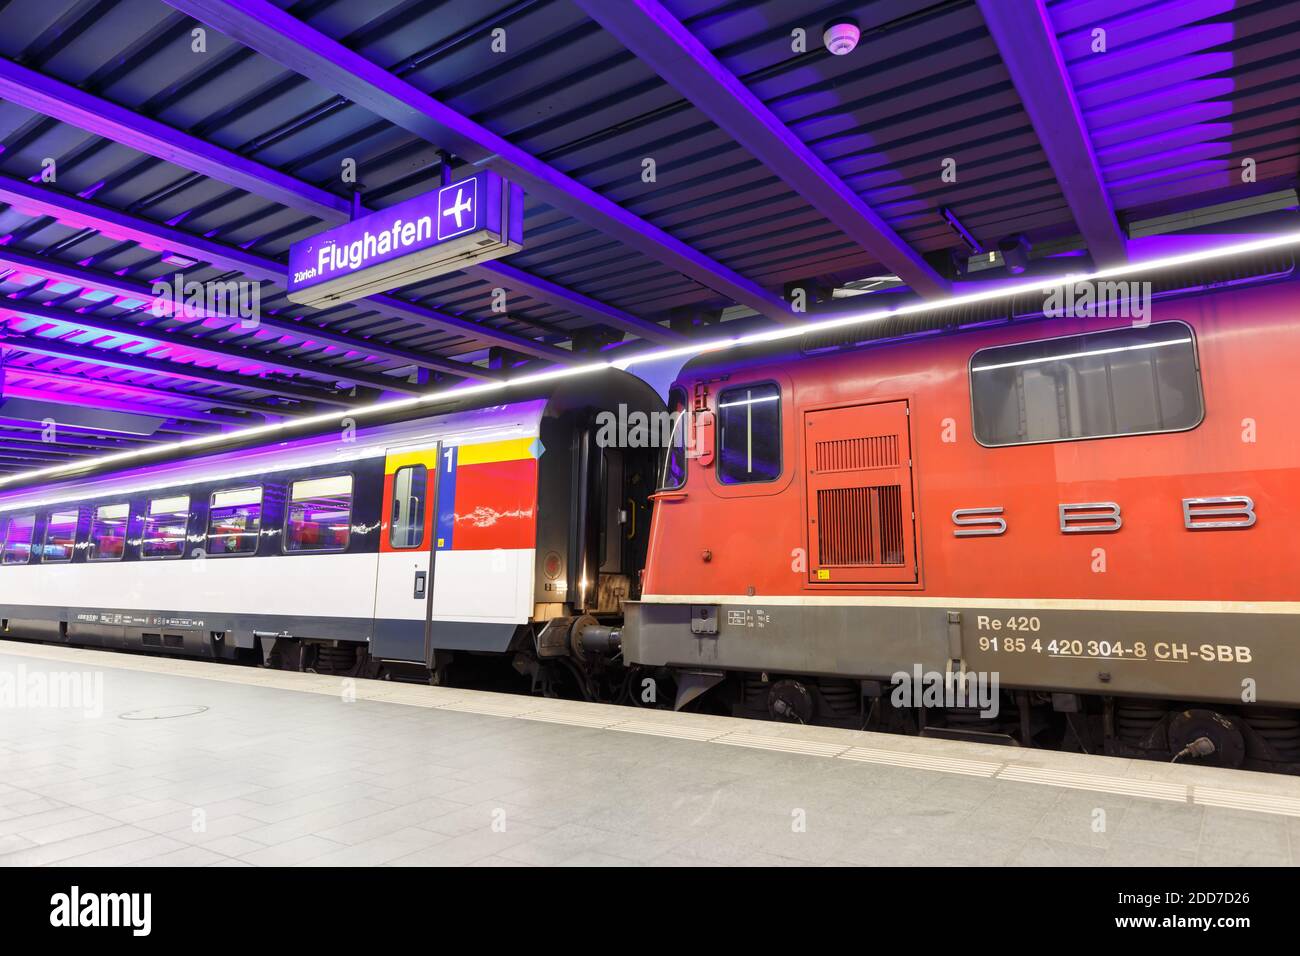 Zurich, Switzerland - September 23, 2020: SBB Locomotive Re 420 train at Zurich Airport railway station in Switzerland. Stock Photo